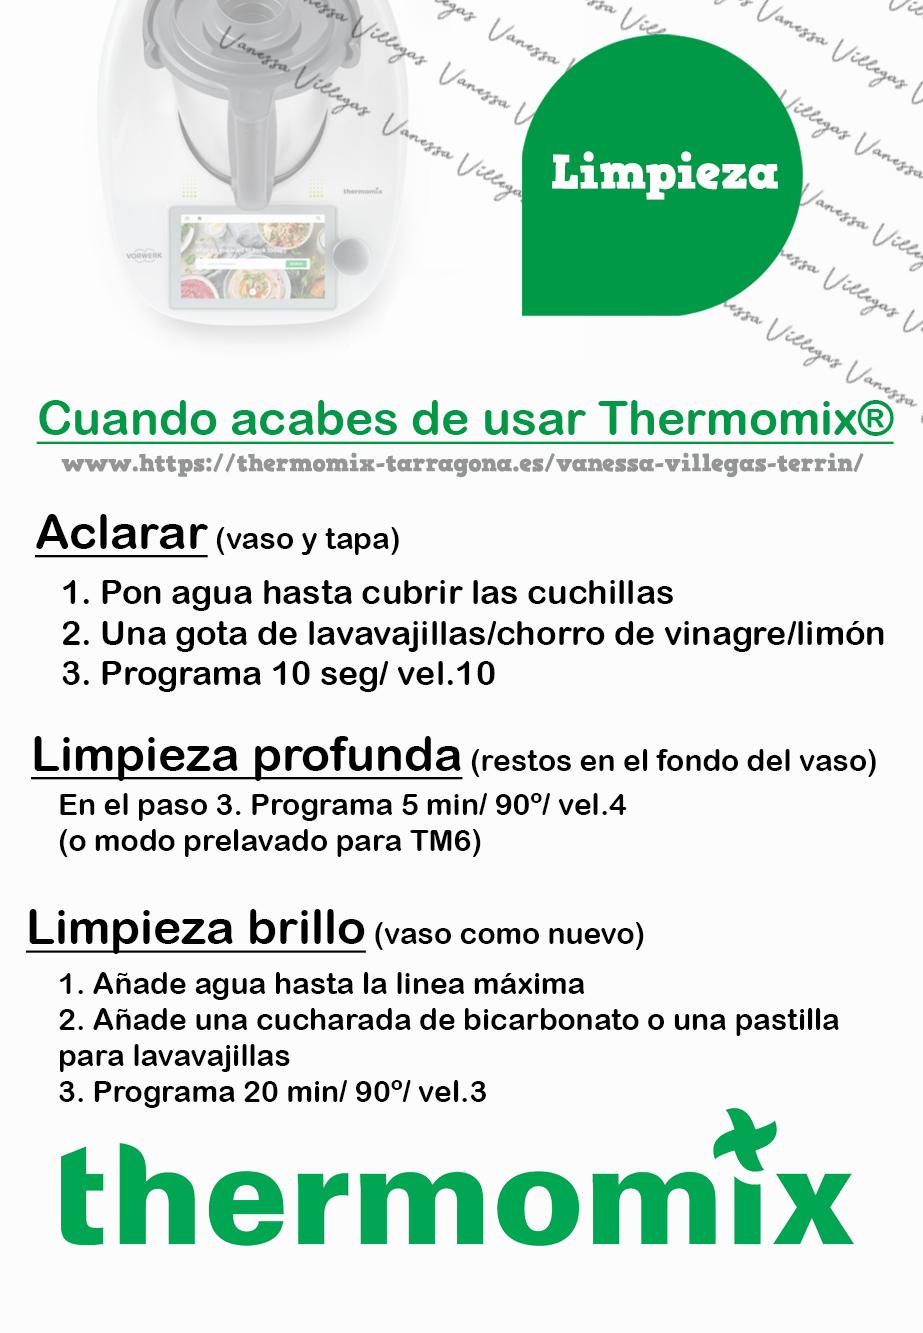 como-se-limpia-la-thermomix